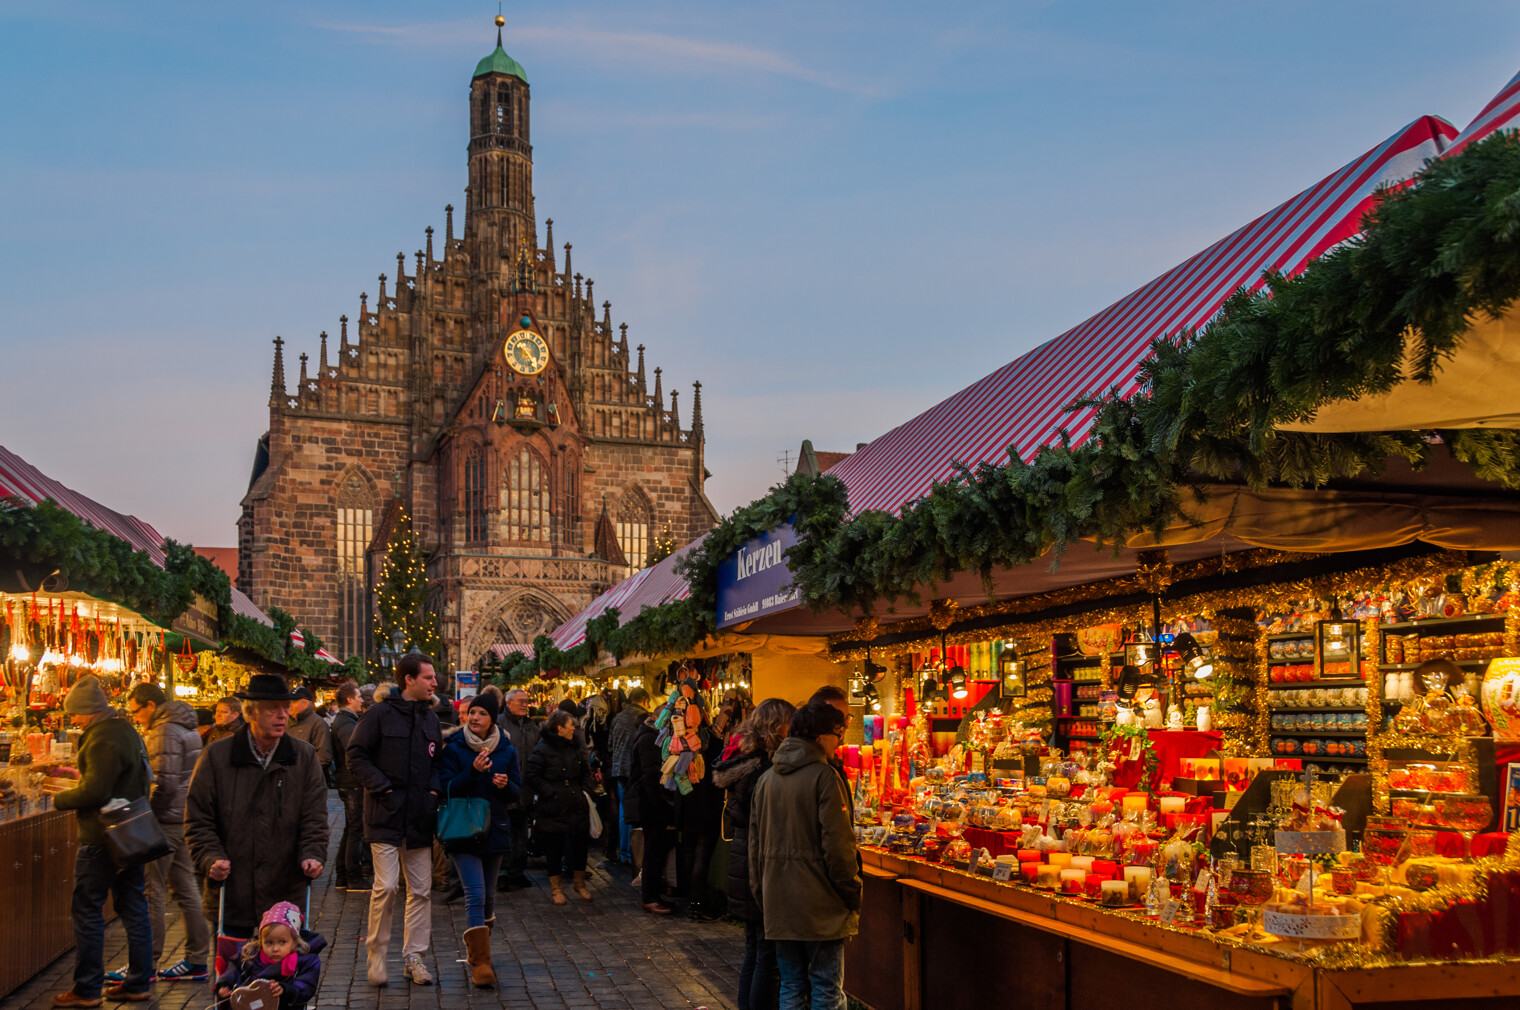 Le marché de Noël de Nuremberg en Allemagne